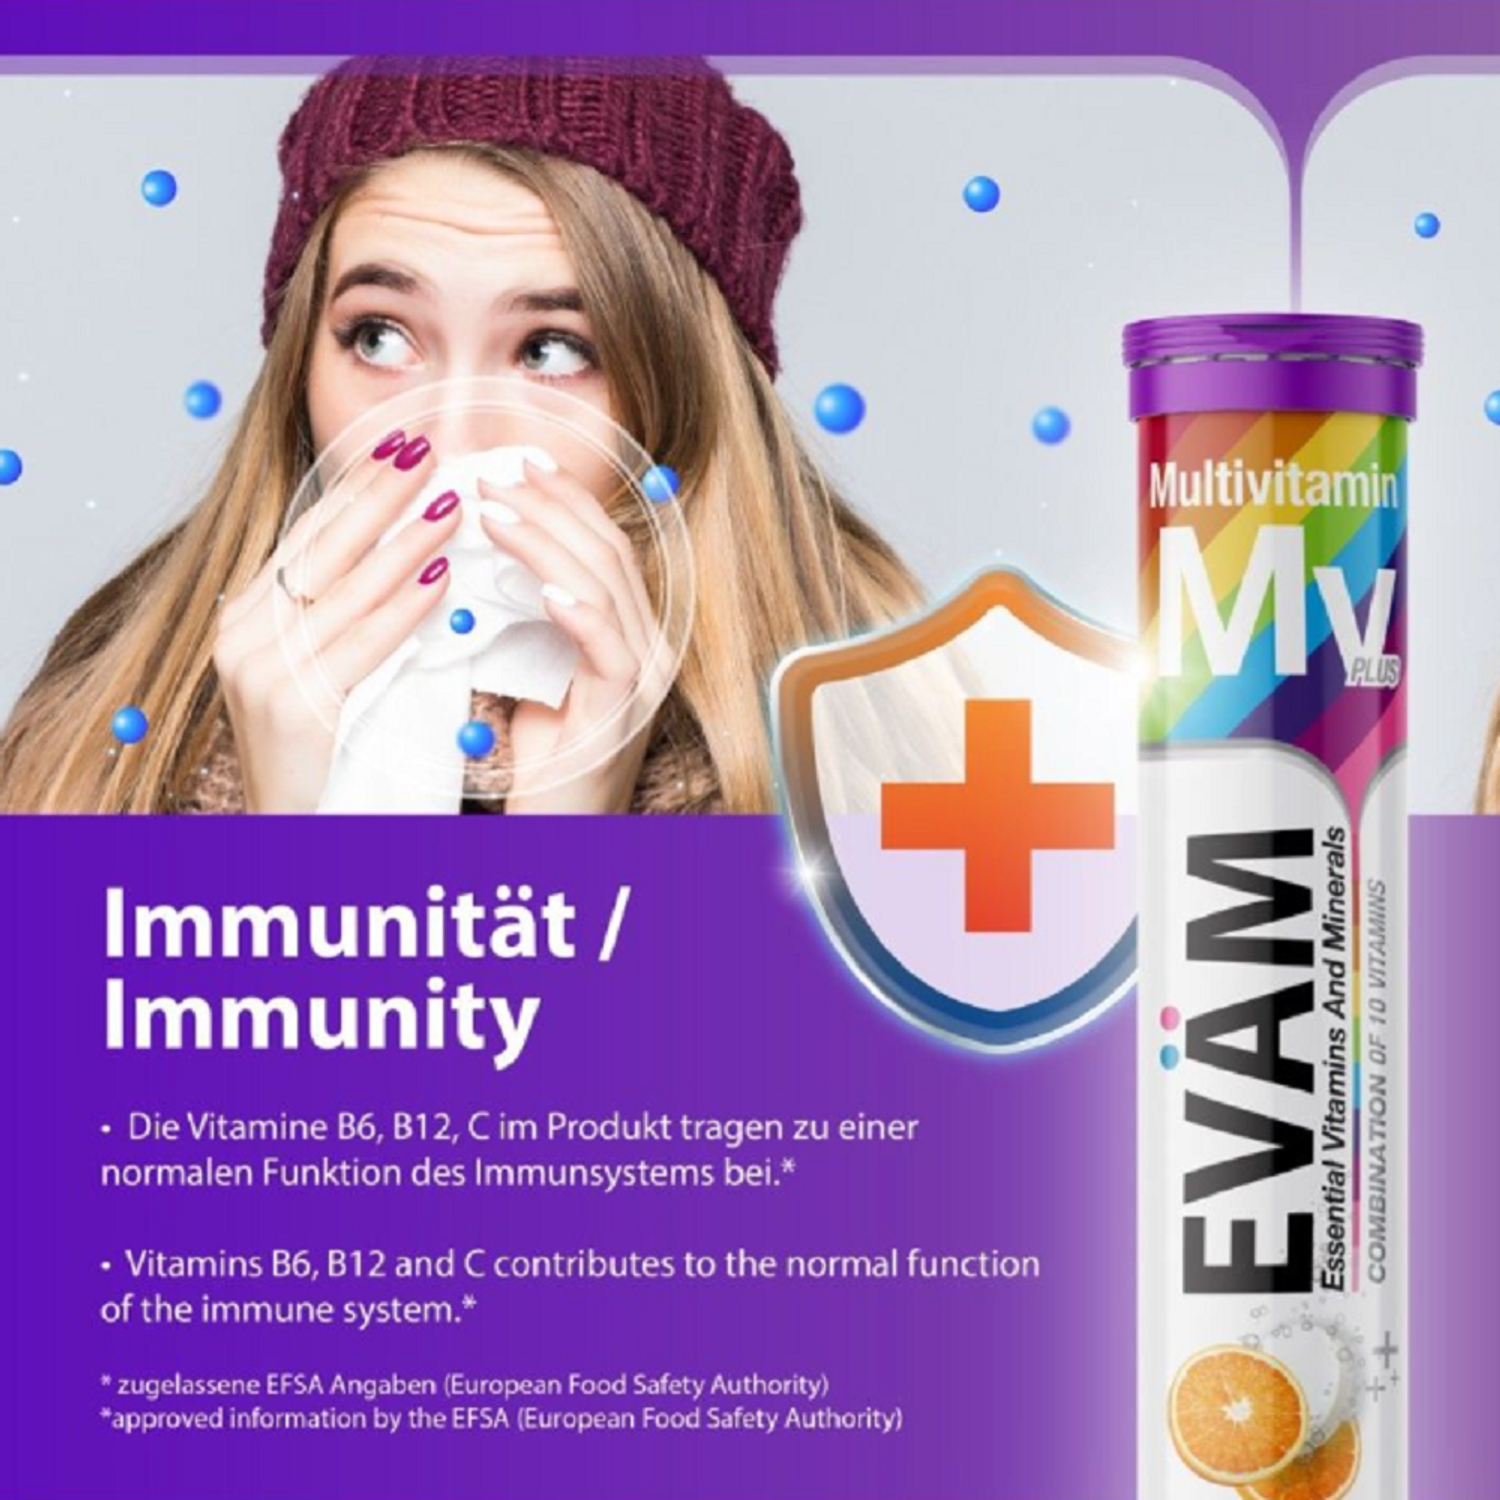 Мультивитамины EVAM шипучие таблетки для иммунитета 20 таблеток - фото 11